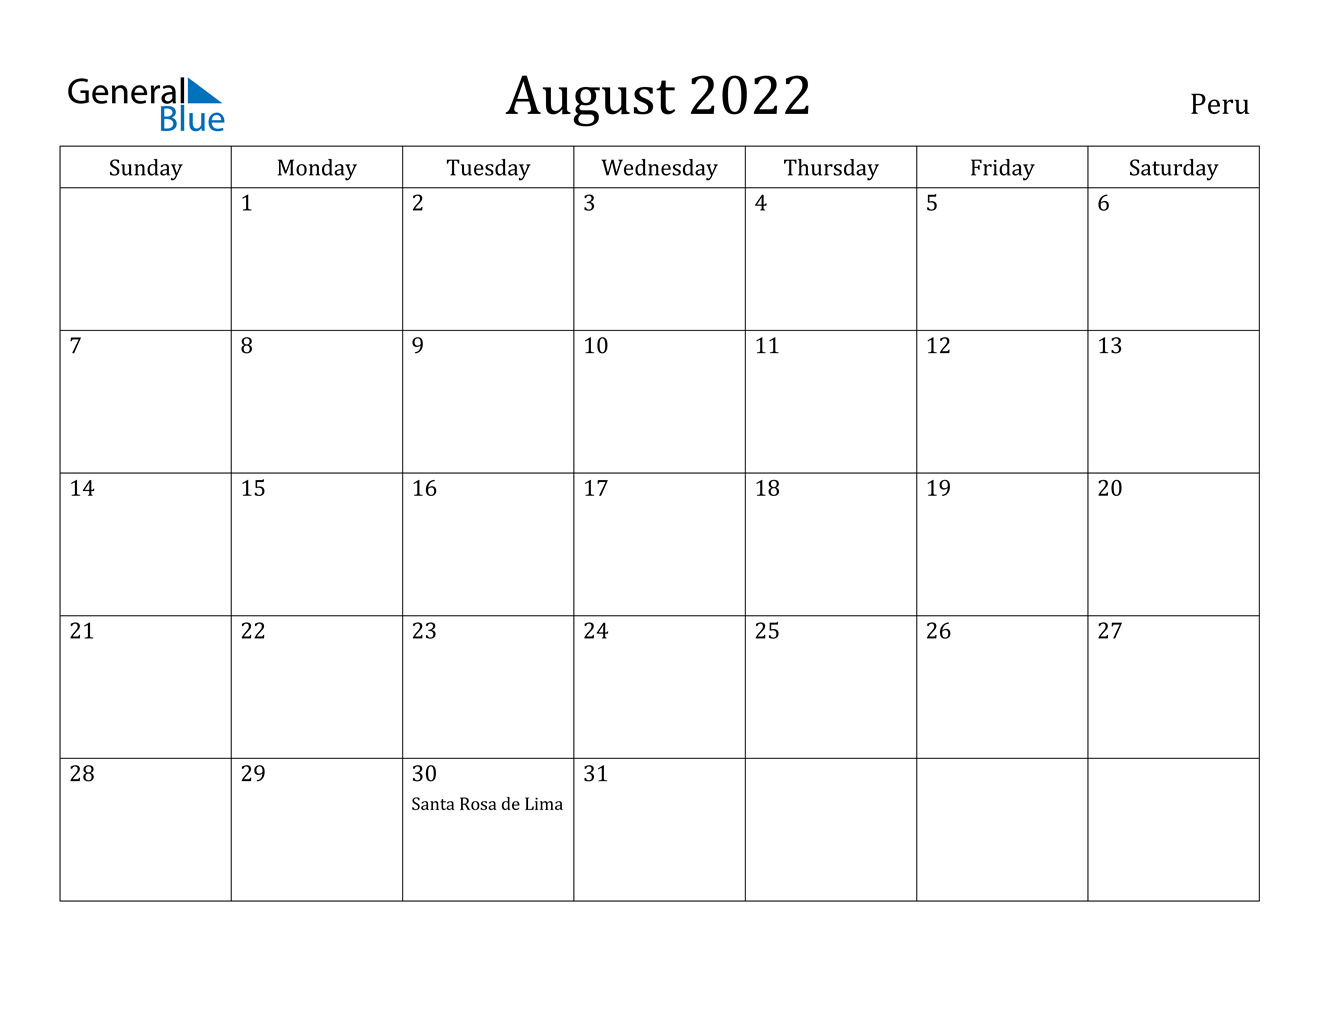 August 2022 Calendar - Peru